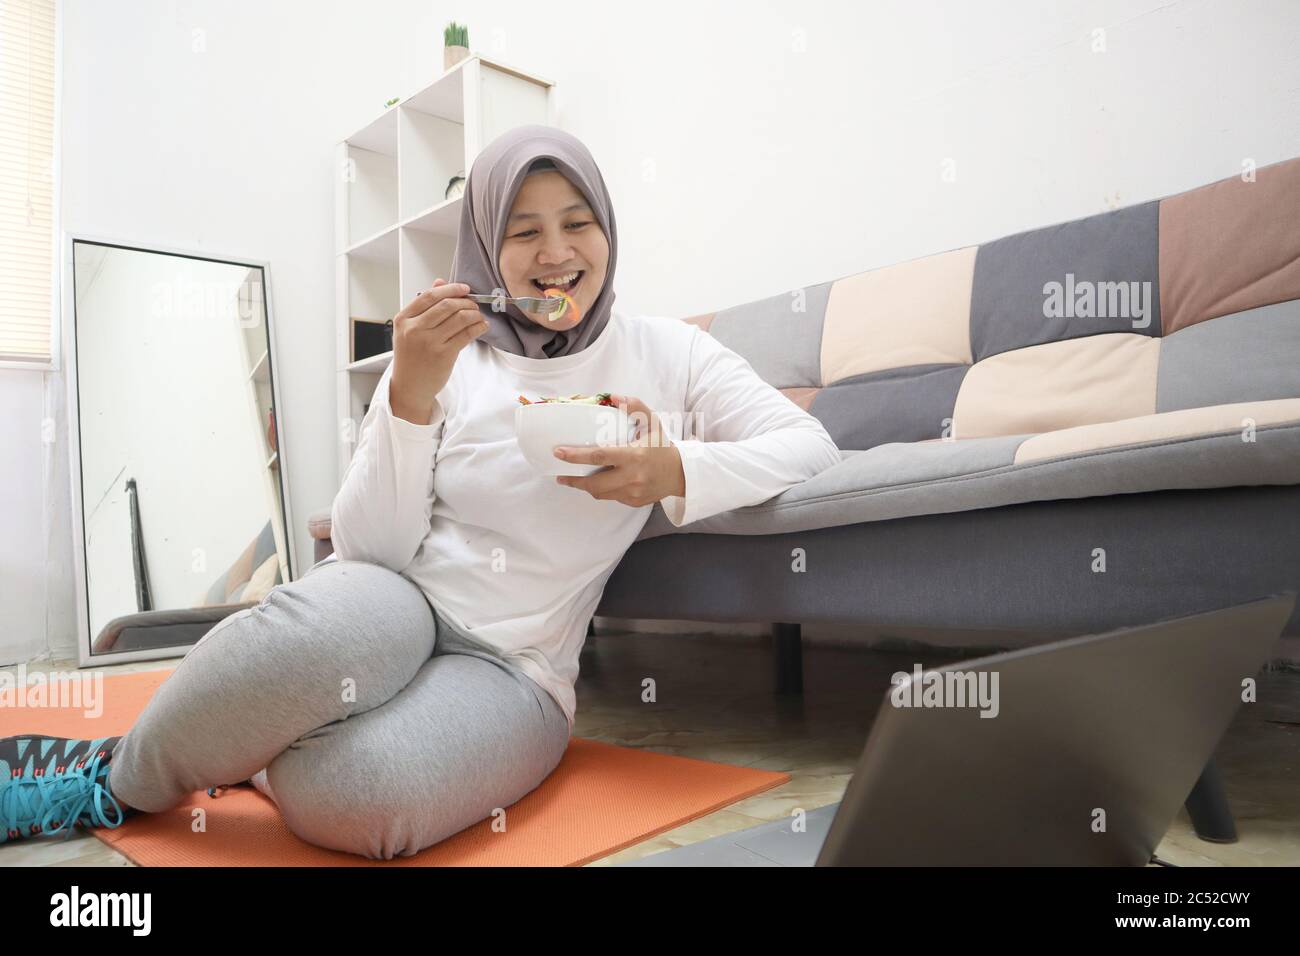 Asiatische muslimische Frau trägt Hijab gesunde Lebensmittel, grüne Gemüse Salat essen, nach dem Training zu Hause, halten Sie sich gesund und fit während der neuen normalen Lebensstil Co Stockfoto